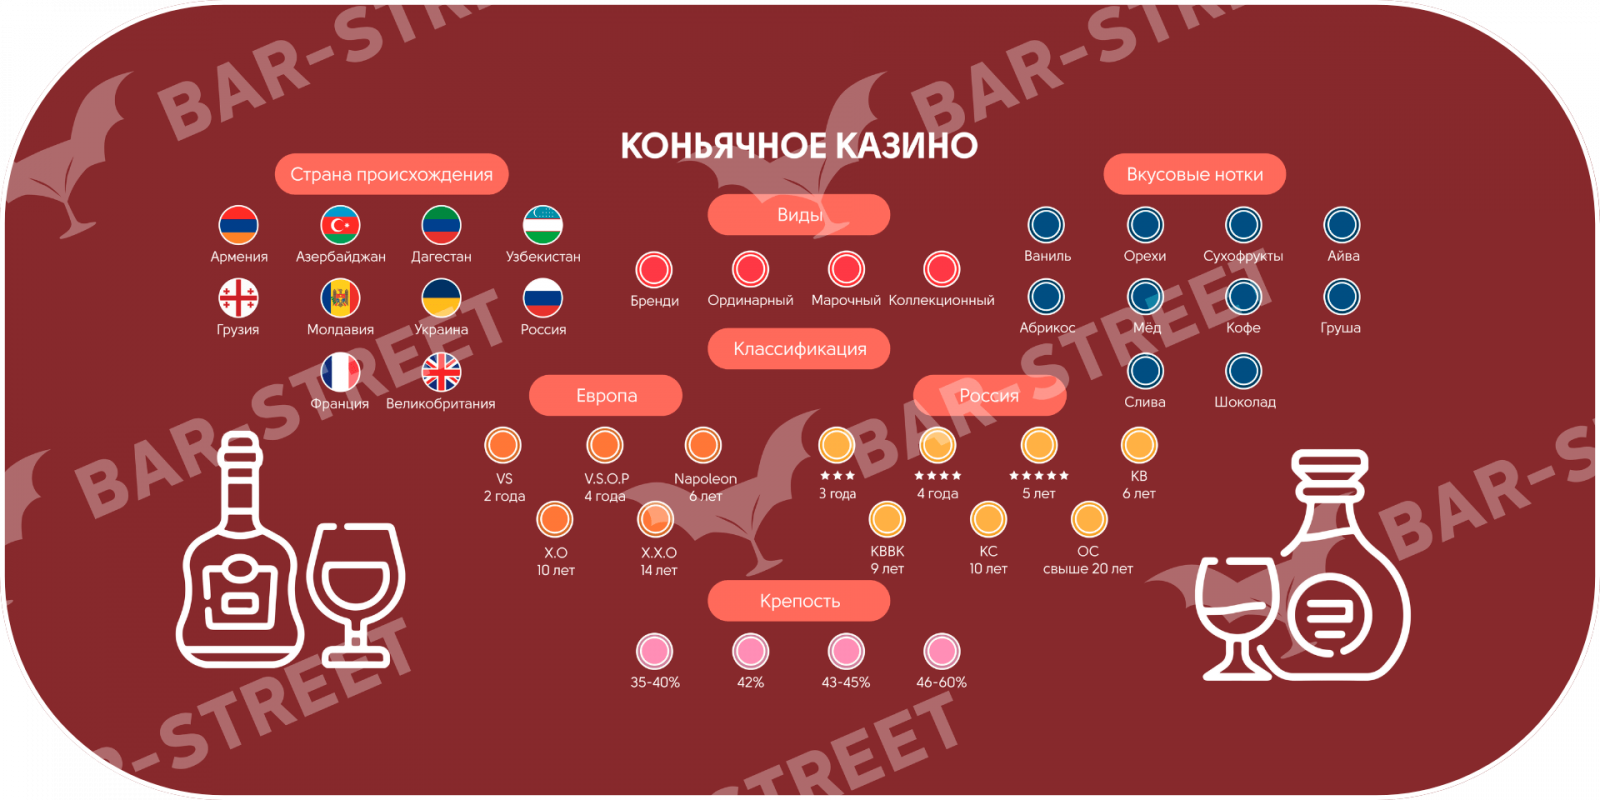 Карта коньячного казино со значками стран, вкусовых ноток, классификаций, видов коньяка. Специально для знатоков отрасли